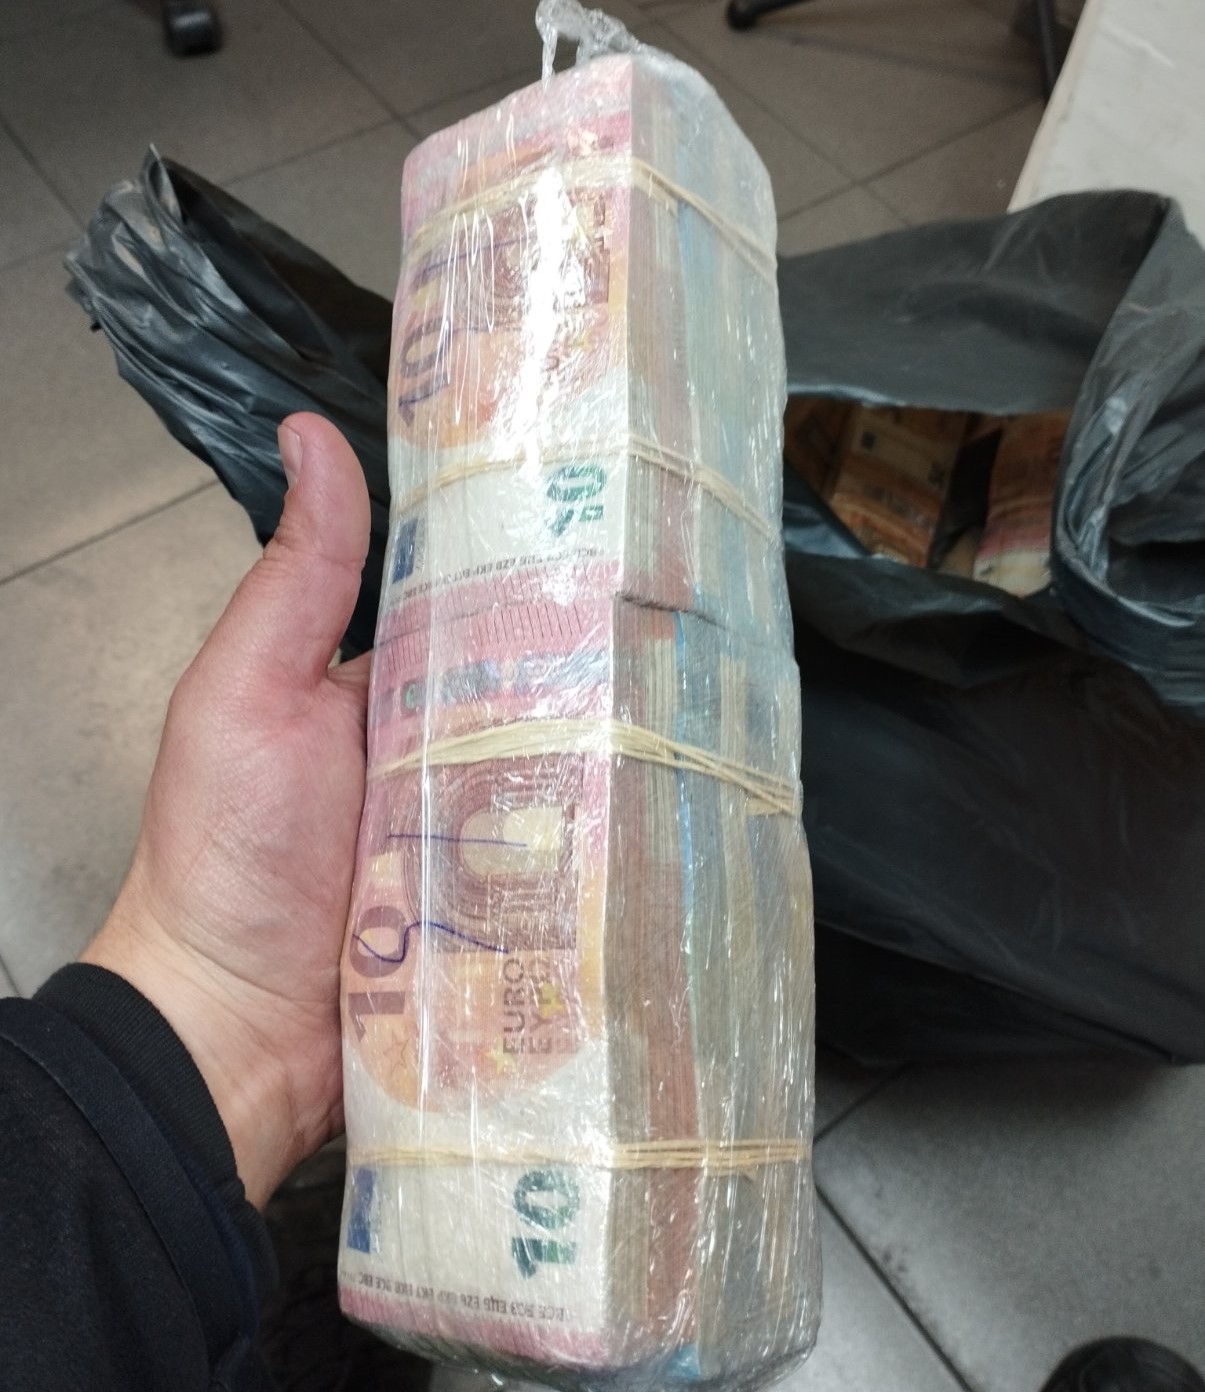 Bulgaristan gümrüğünde kaptırdığı paraya bakın